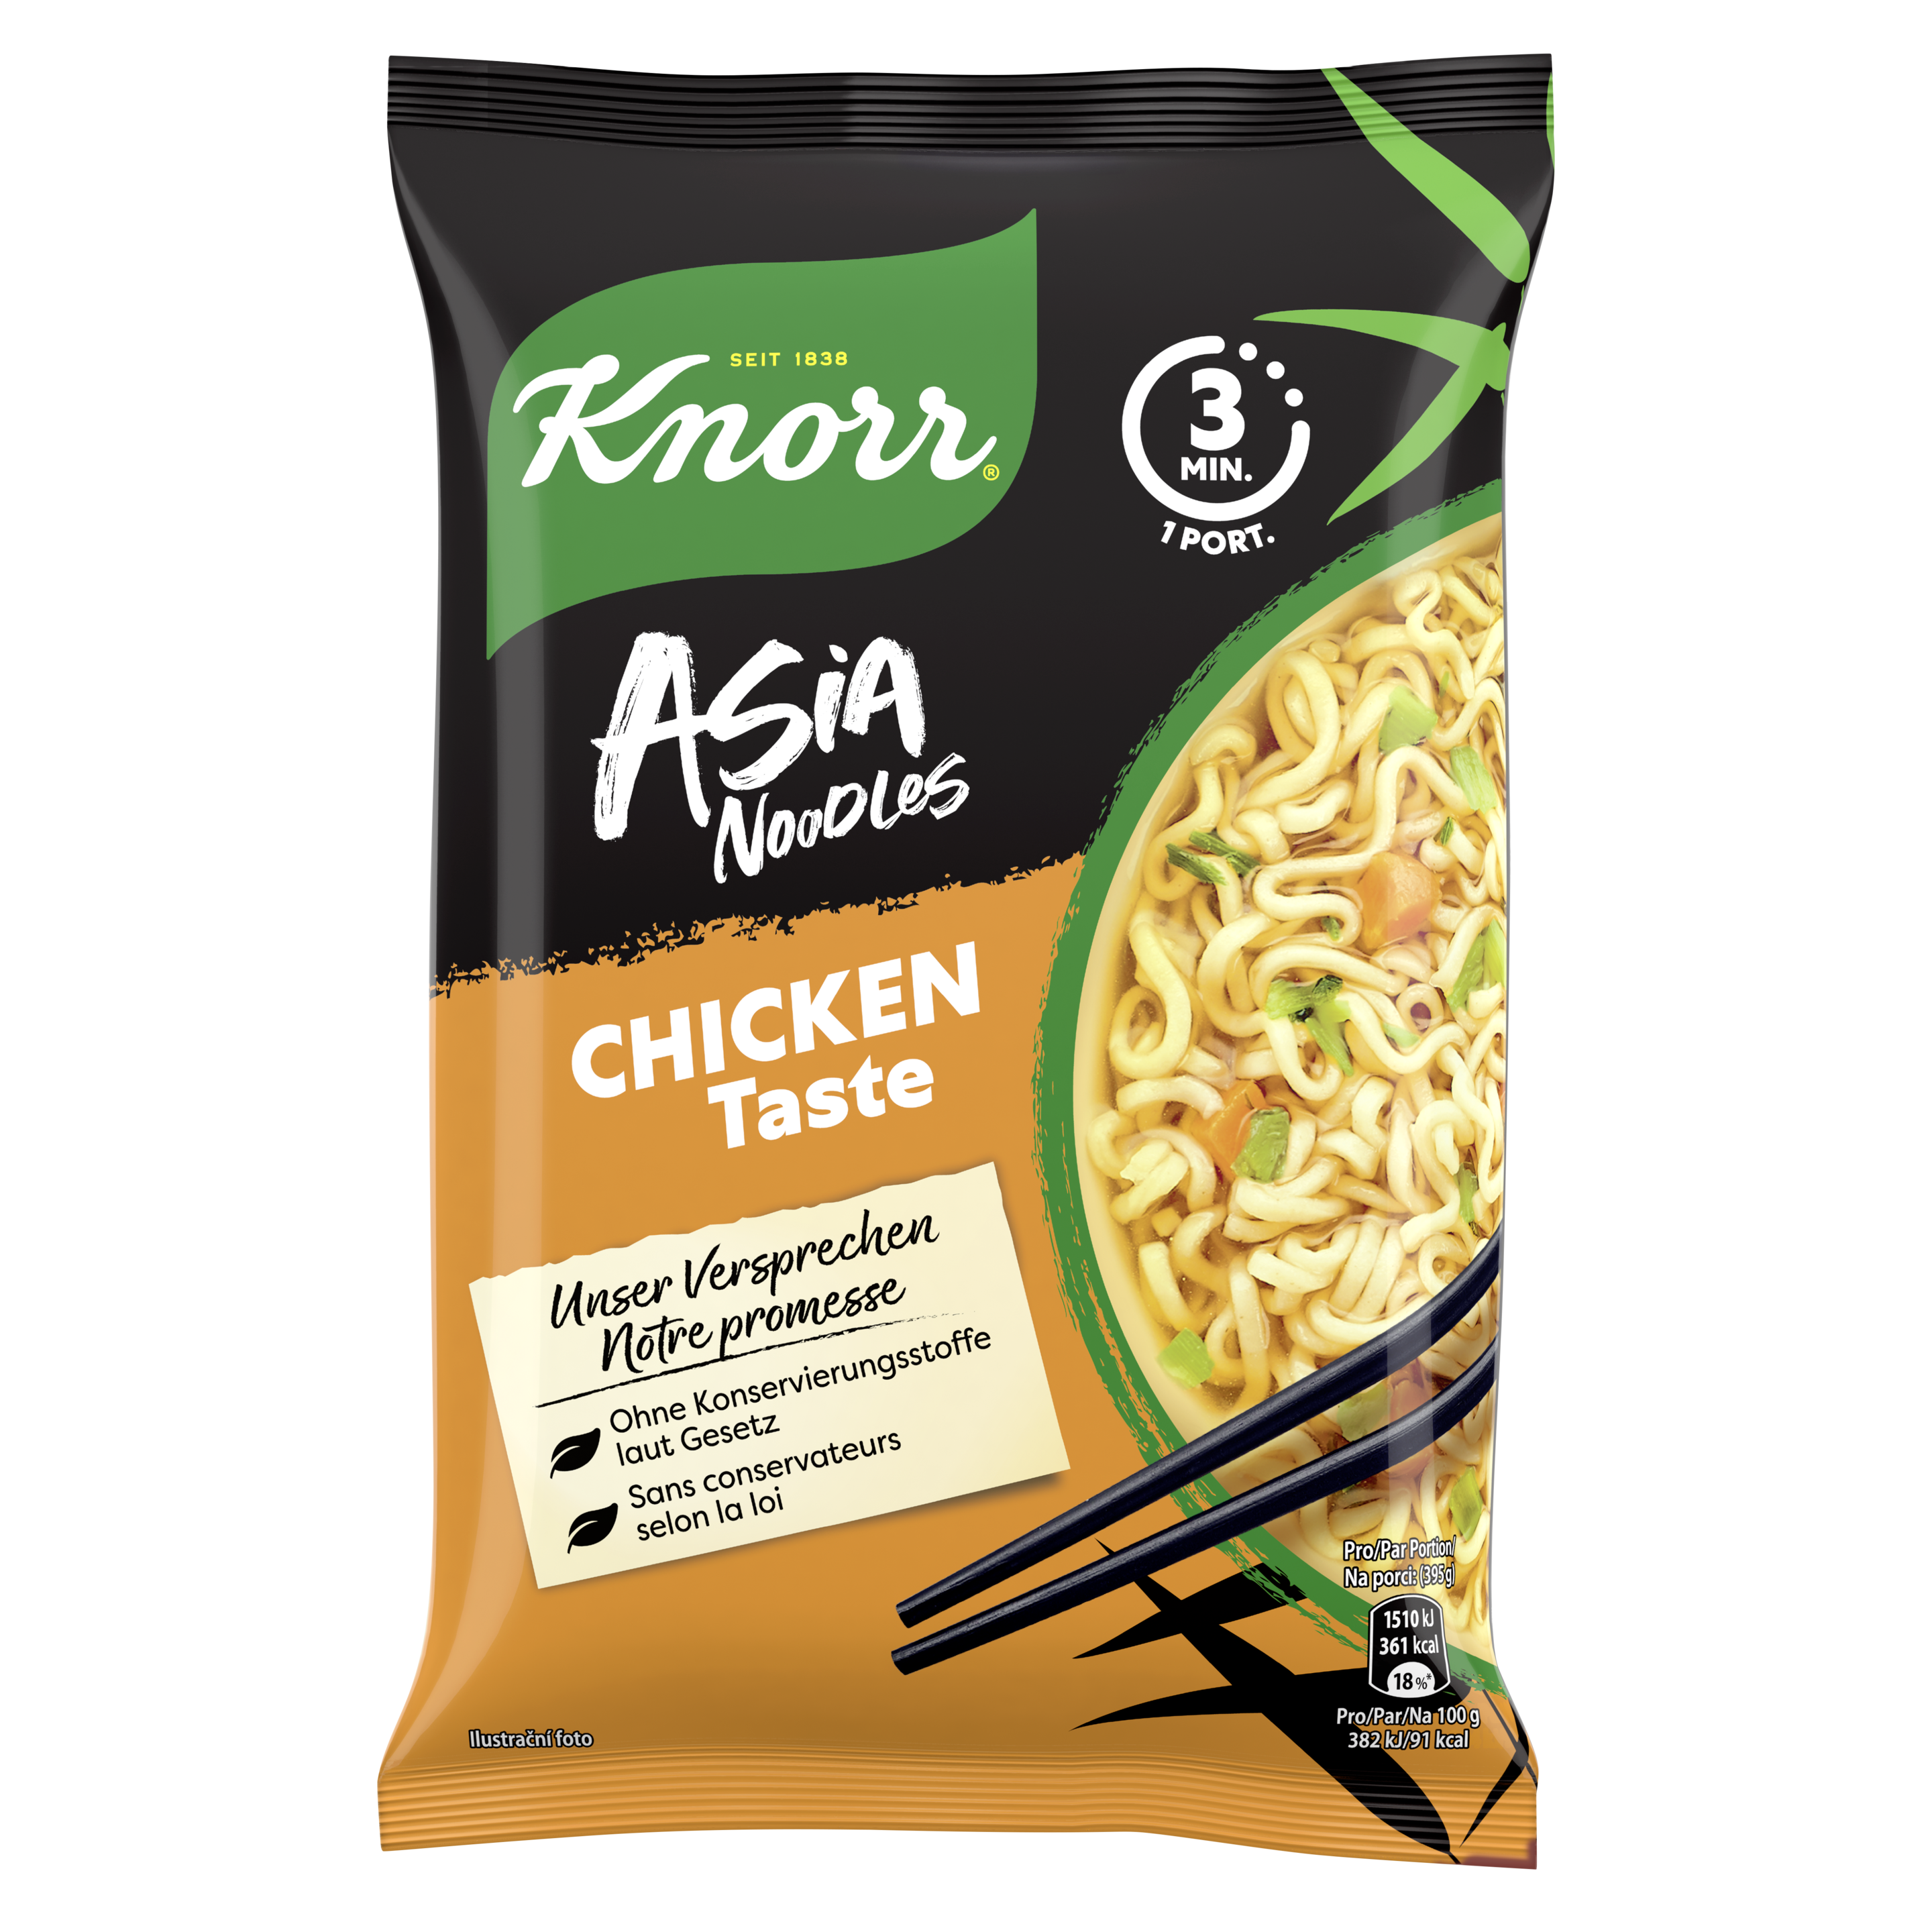 KNORR Asia noodles Chicken Taste sachet 1 Portion